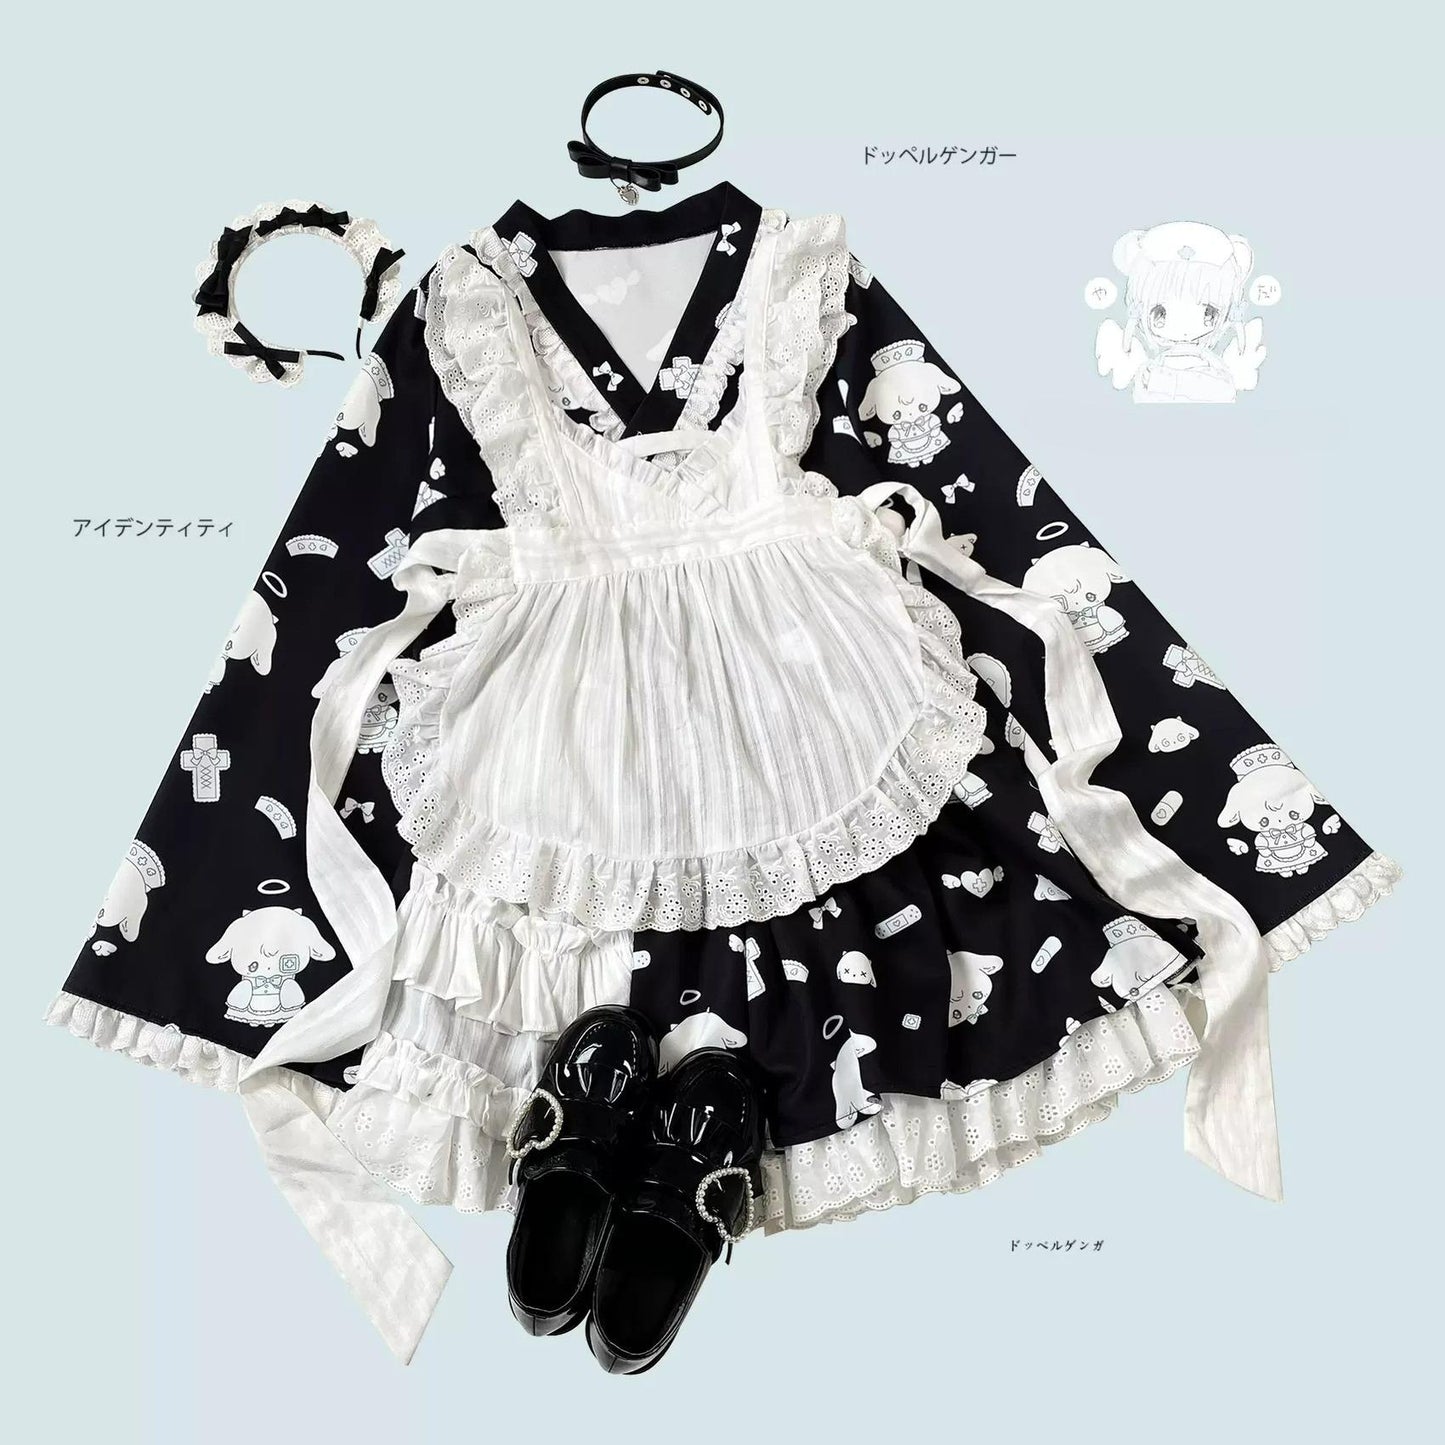 Tenshi Kaiwai Patchwork Skirt Kimono Top White Apron Three-Piece Set 36786:536952